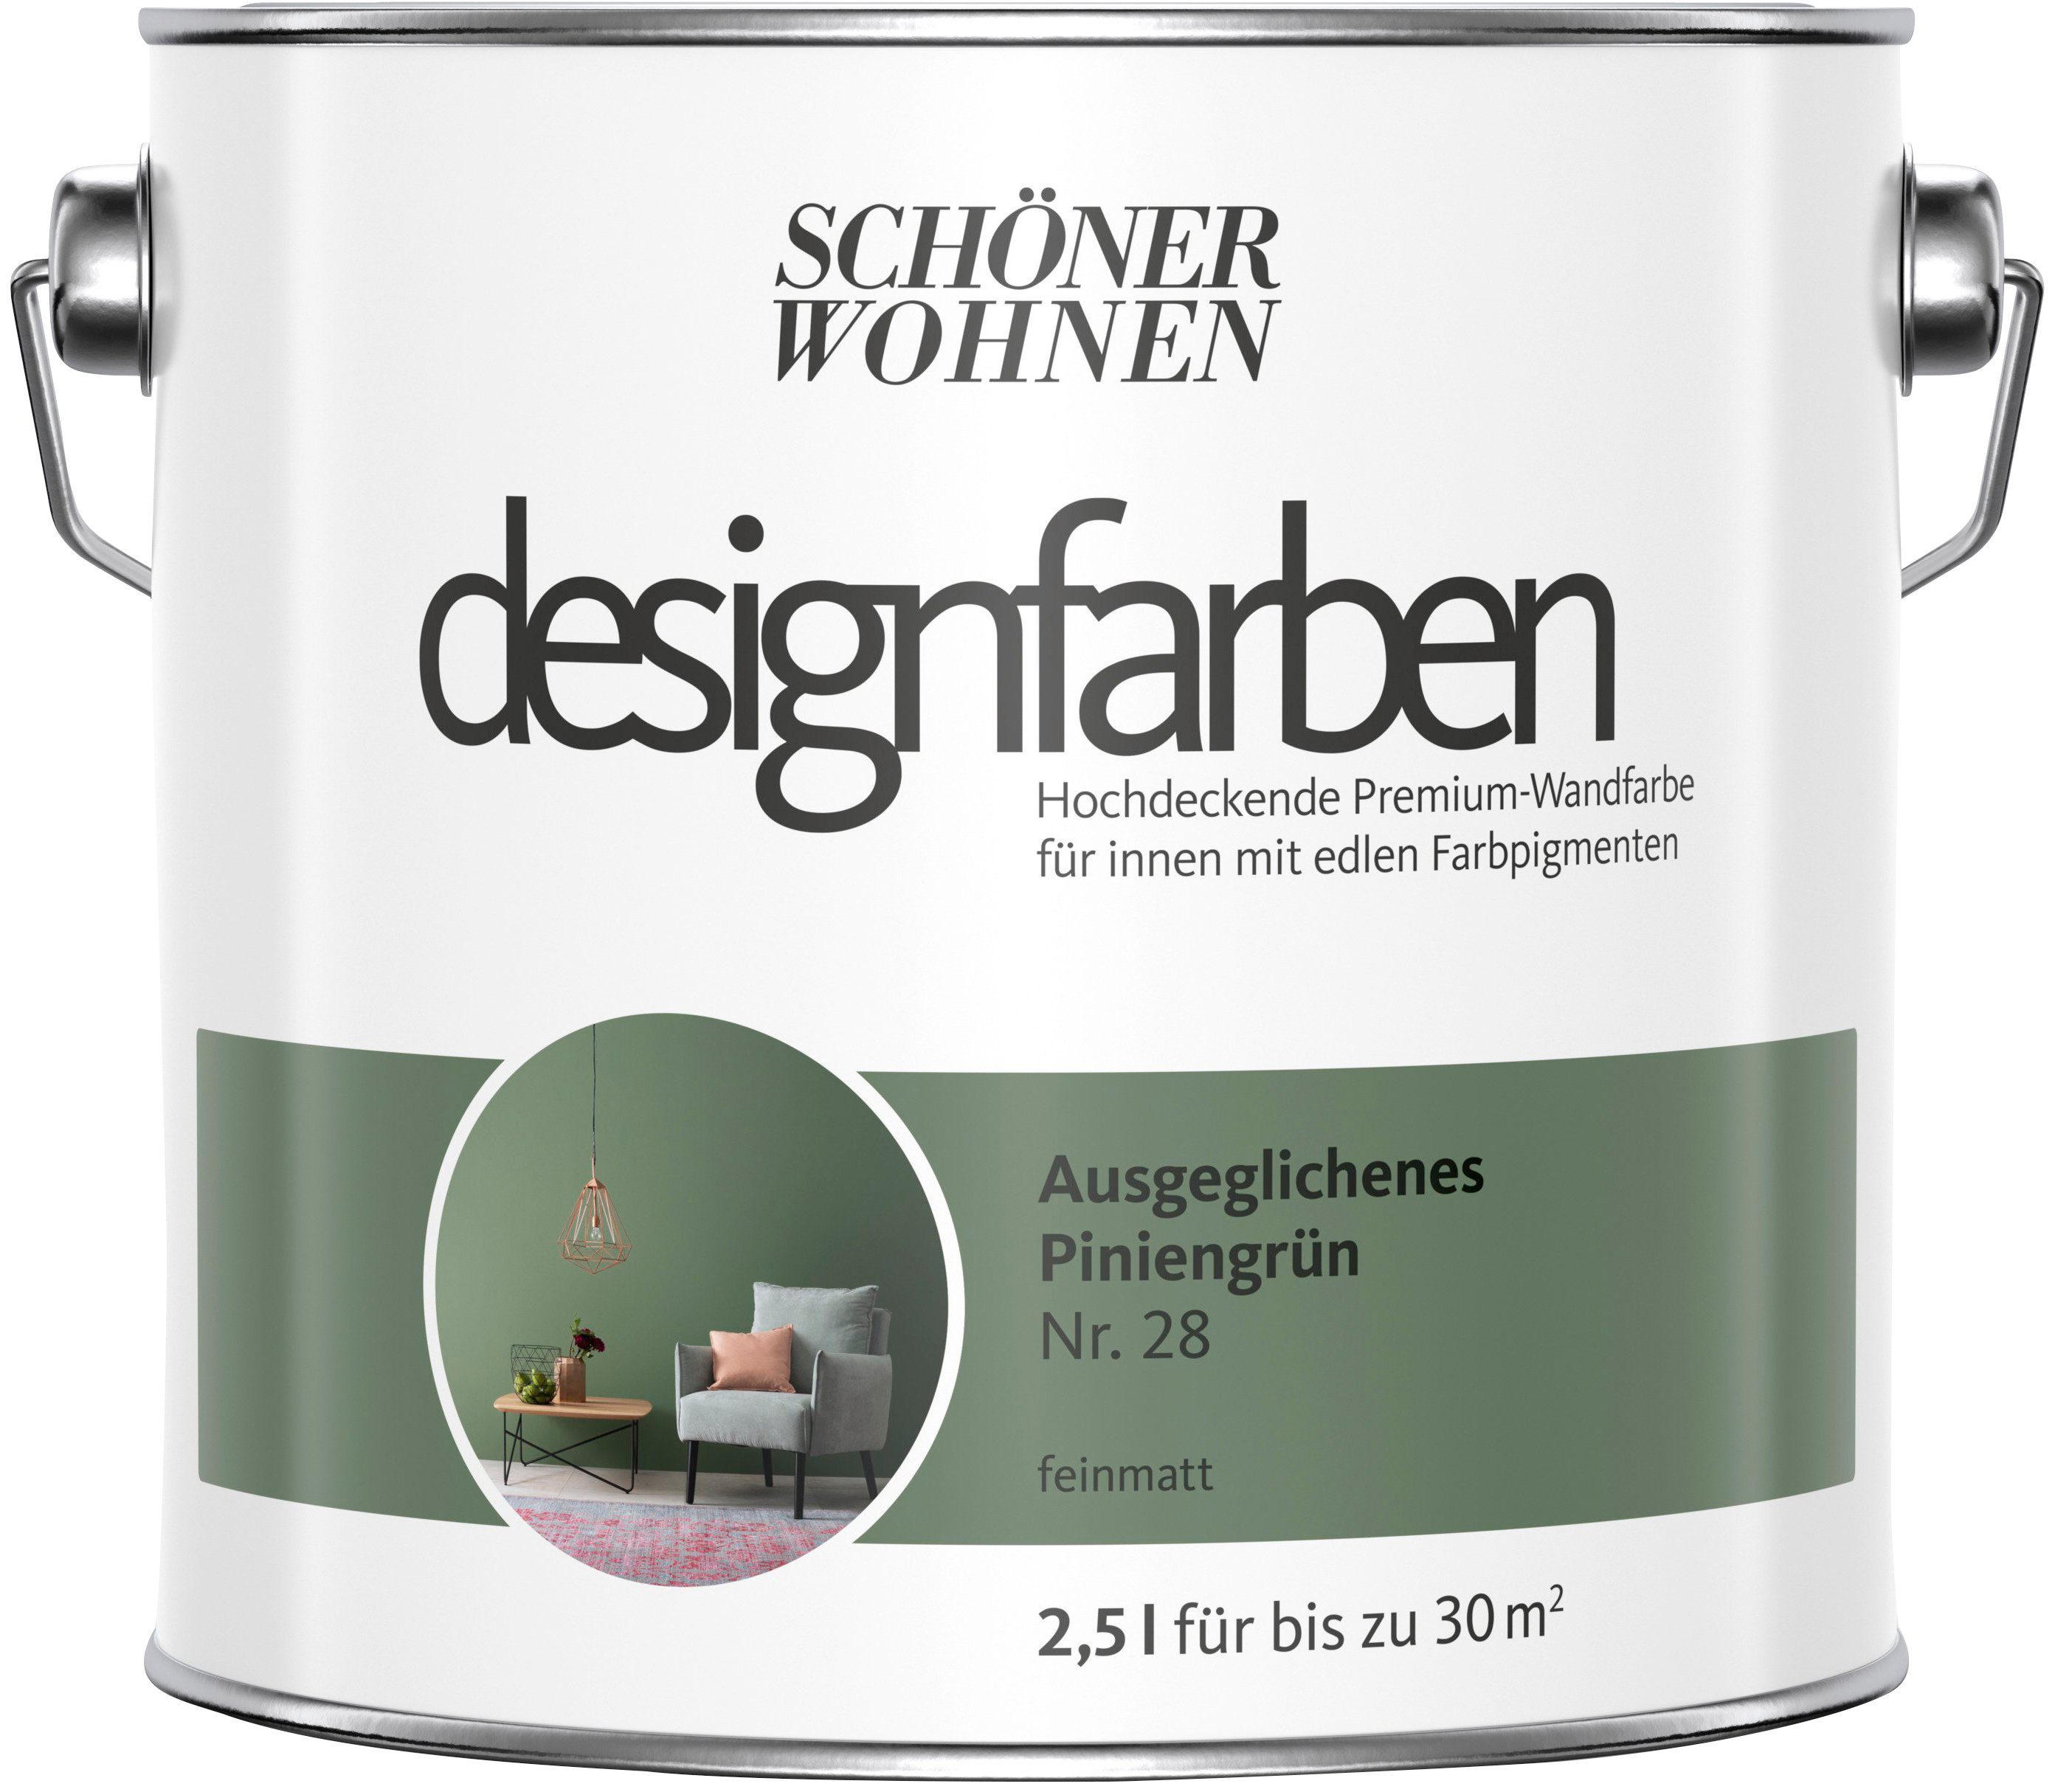 SCHÖNER WOHNEN FARBE Wand- und Deckenfarbe designfarben, hochdeckende Premium-Wandfarbe, Farbwelt Grün